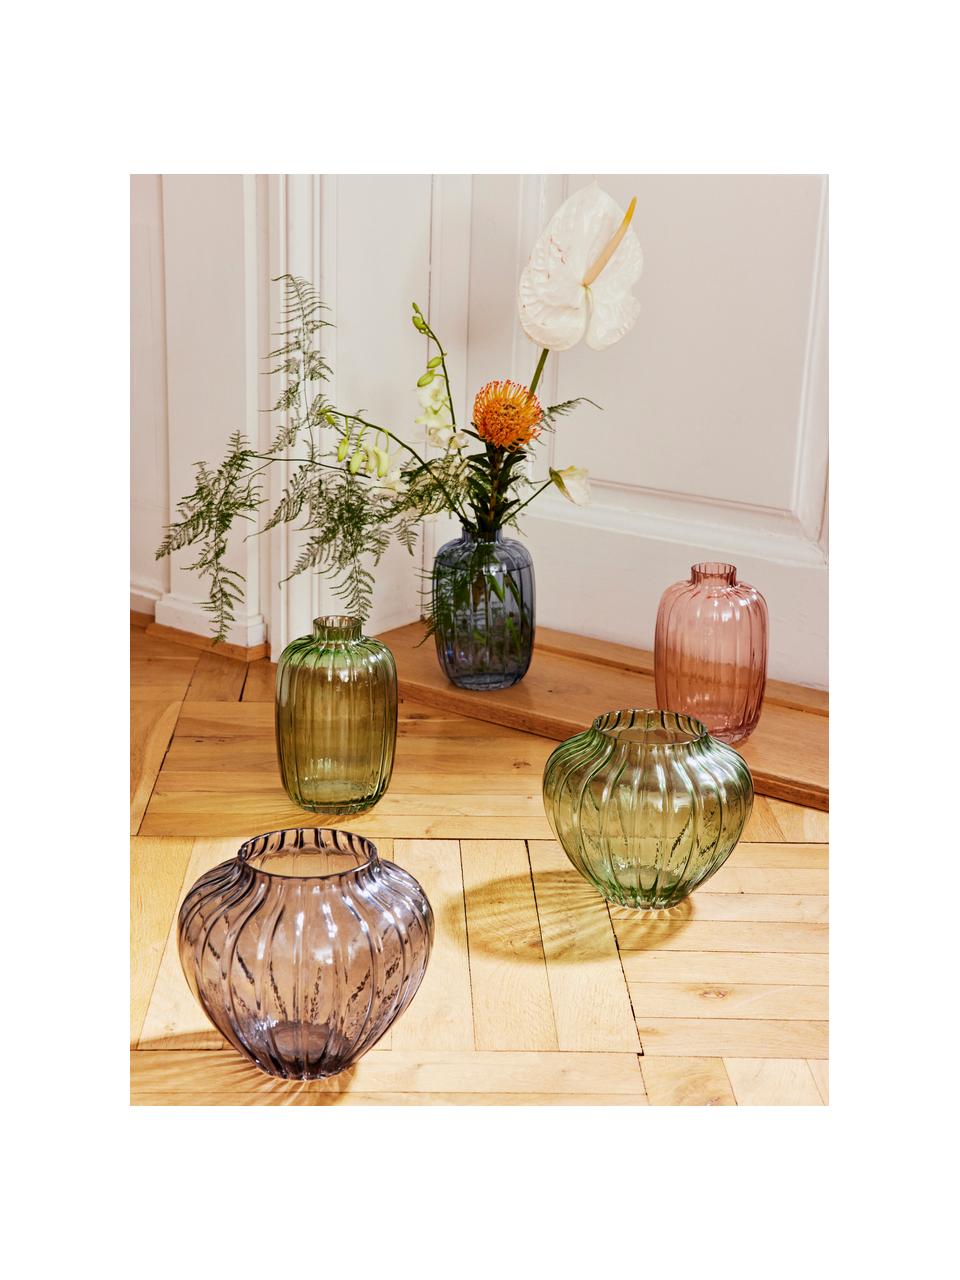 Vaso in vetro Groove, Vetro, Verde trasparente, Ø 13 x Alt. 20 cm